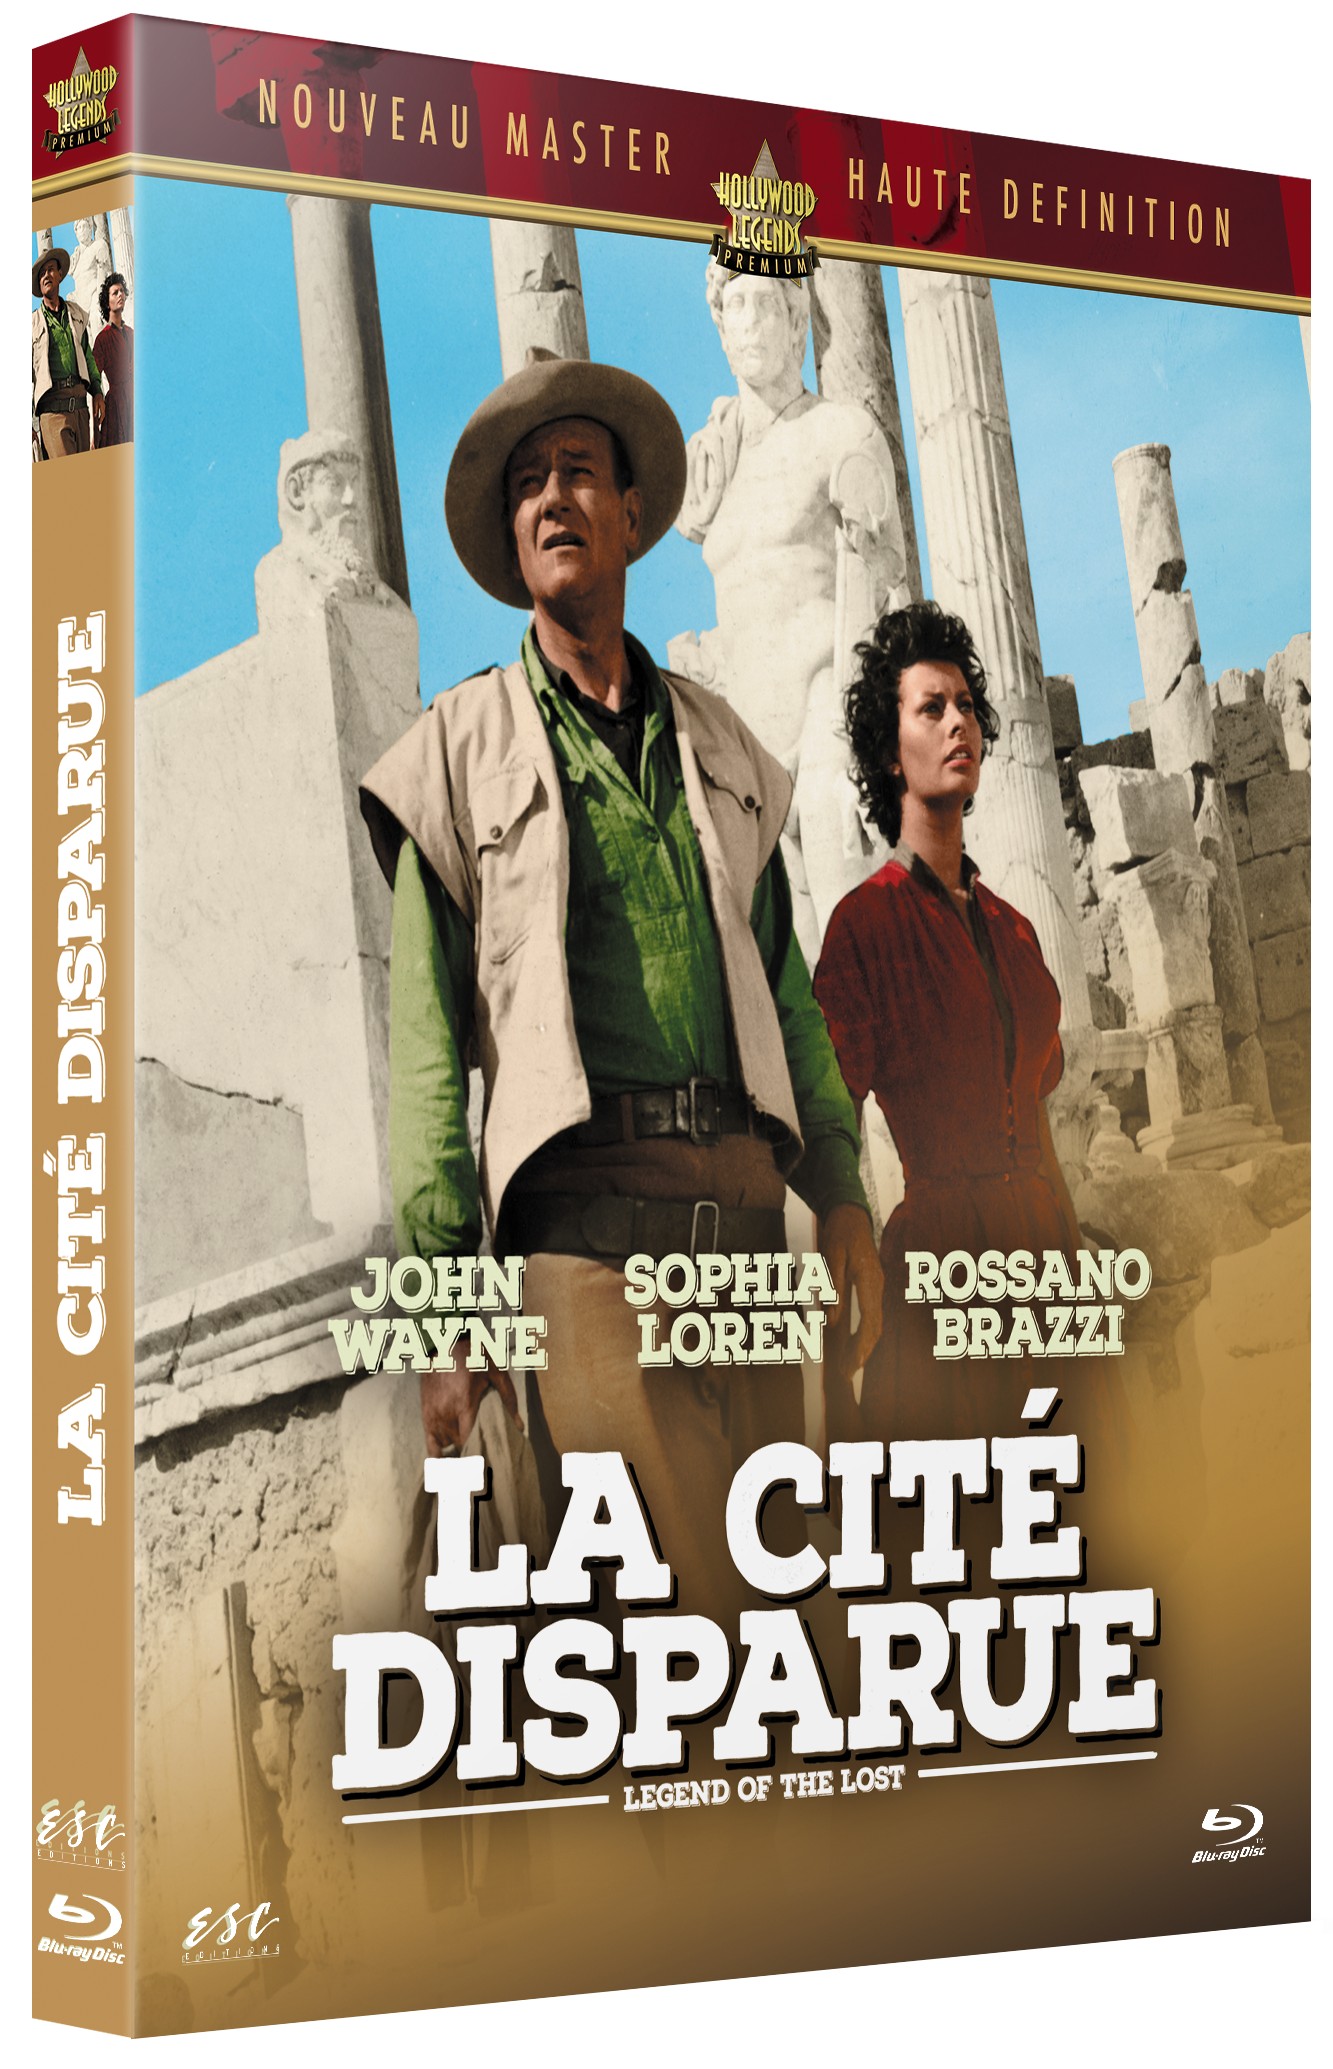 LA CITE DISPARUE - LEGEND OF THE LOST